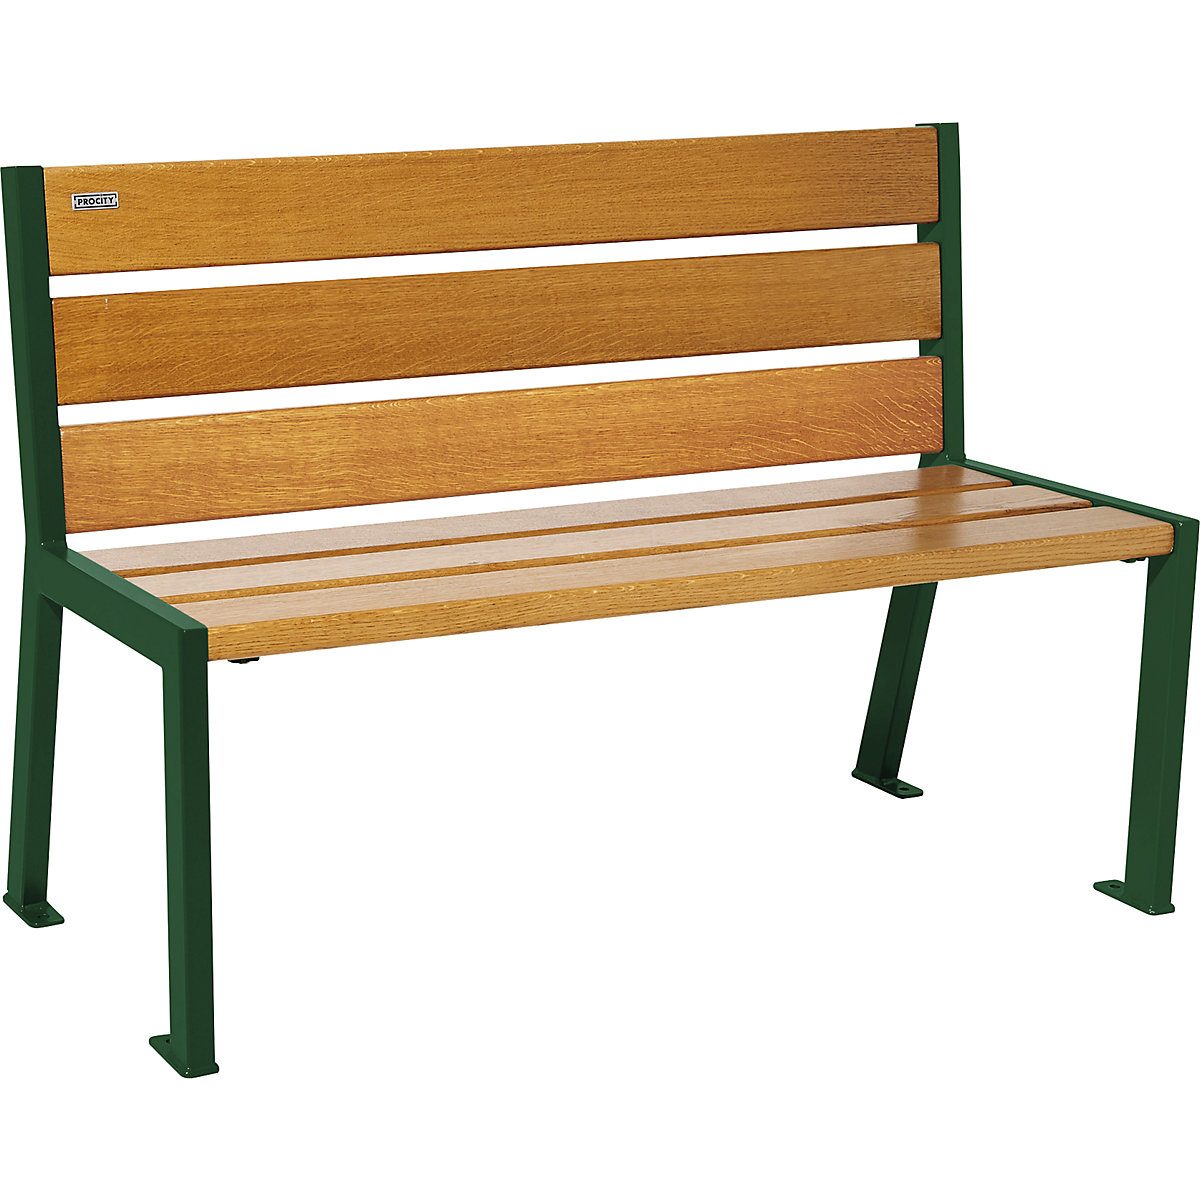 SILAOS® bench made of wood – PROCITY